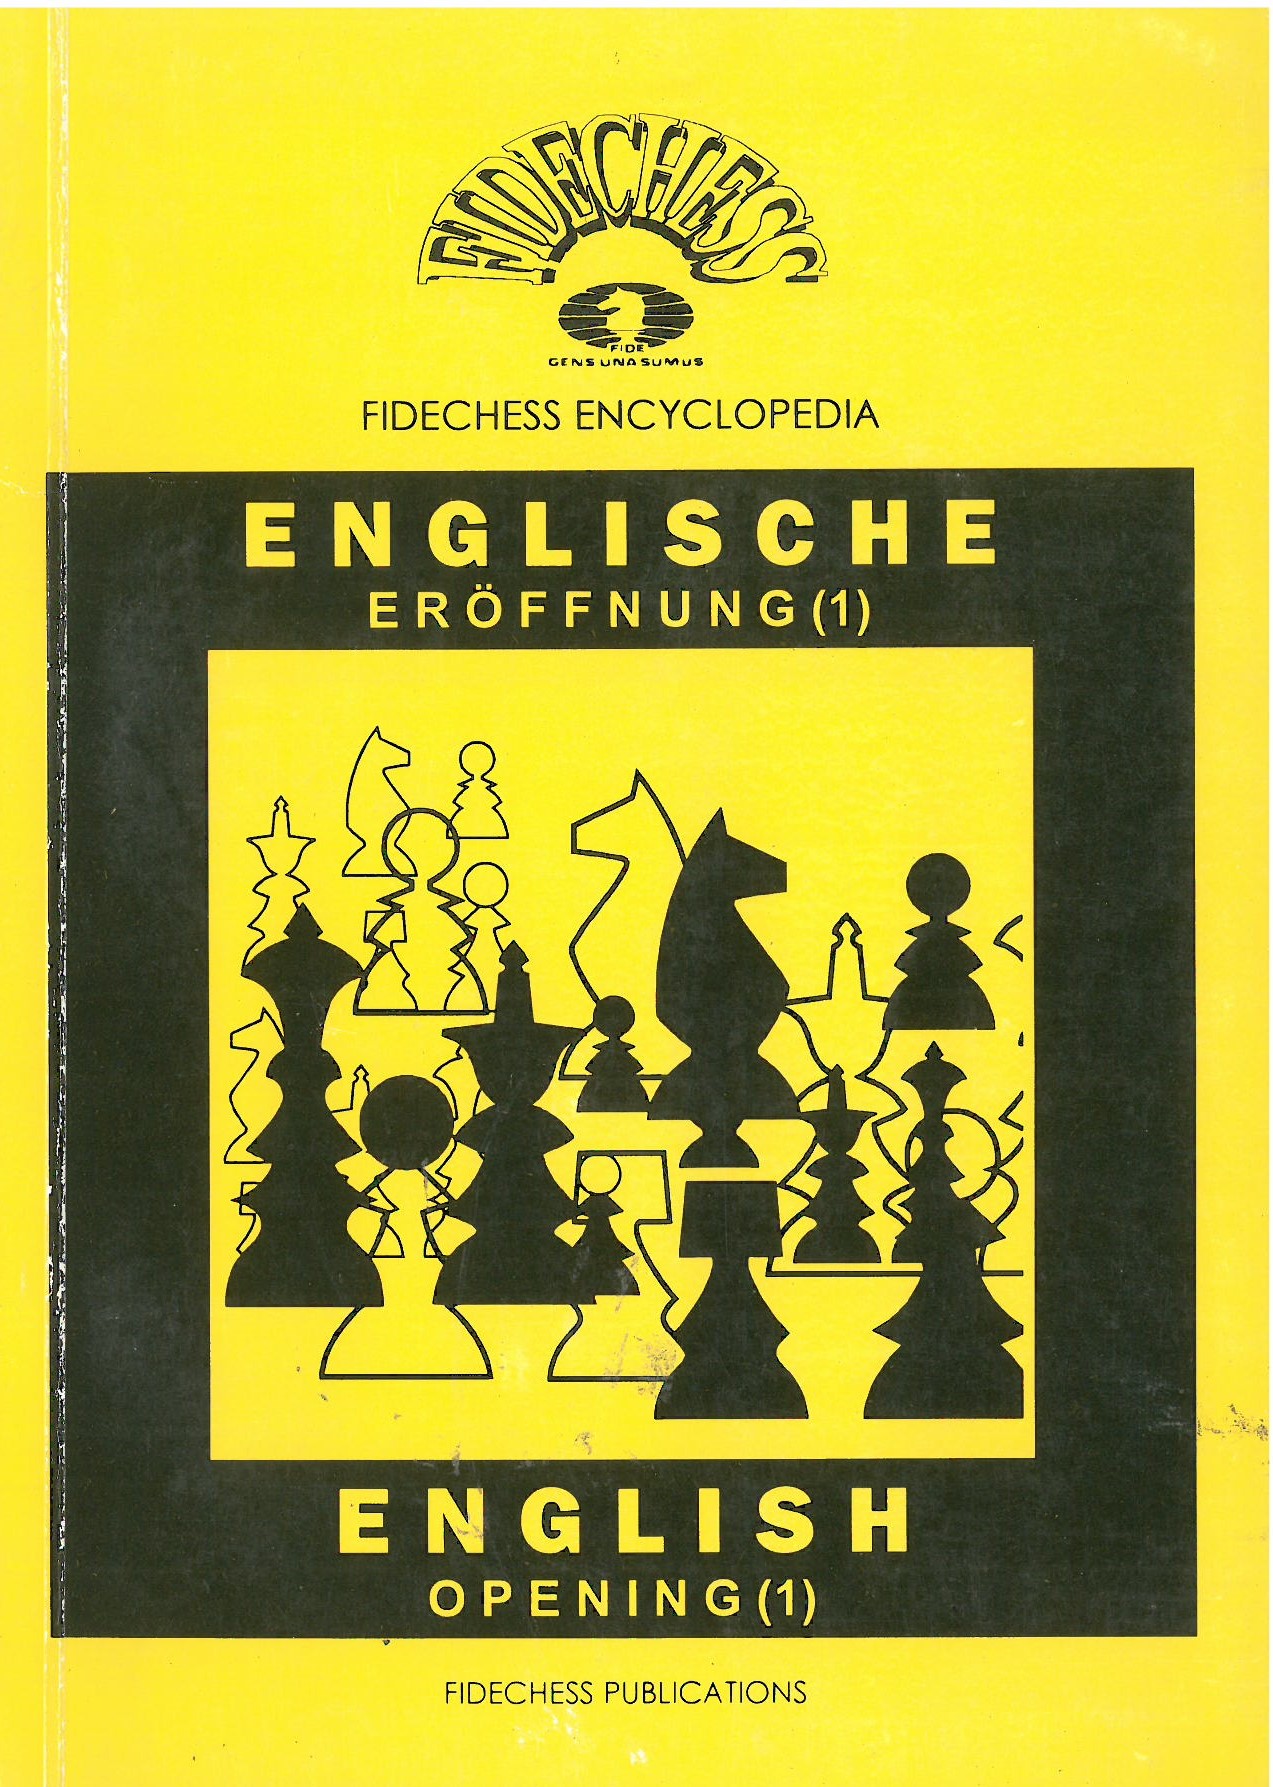 Fidechess Encyclopedia: Englische Eröffnung (1) A30-A33